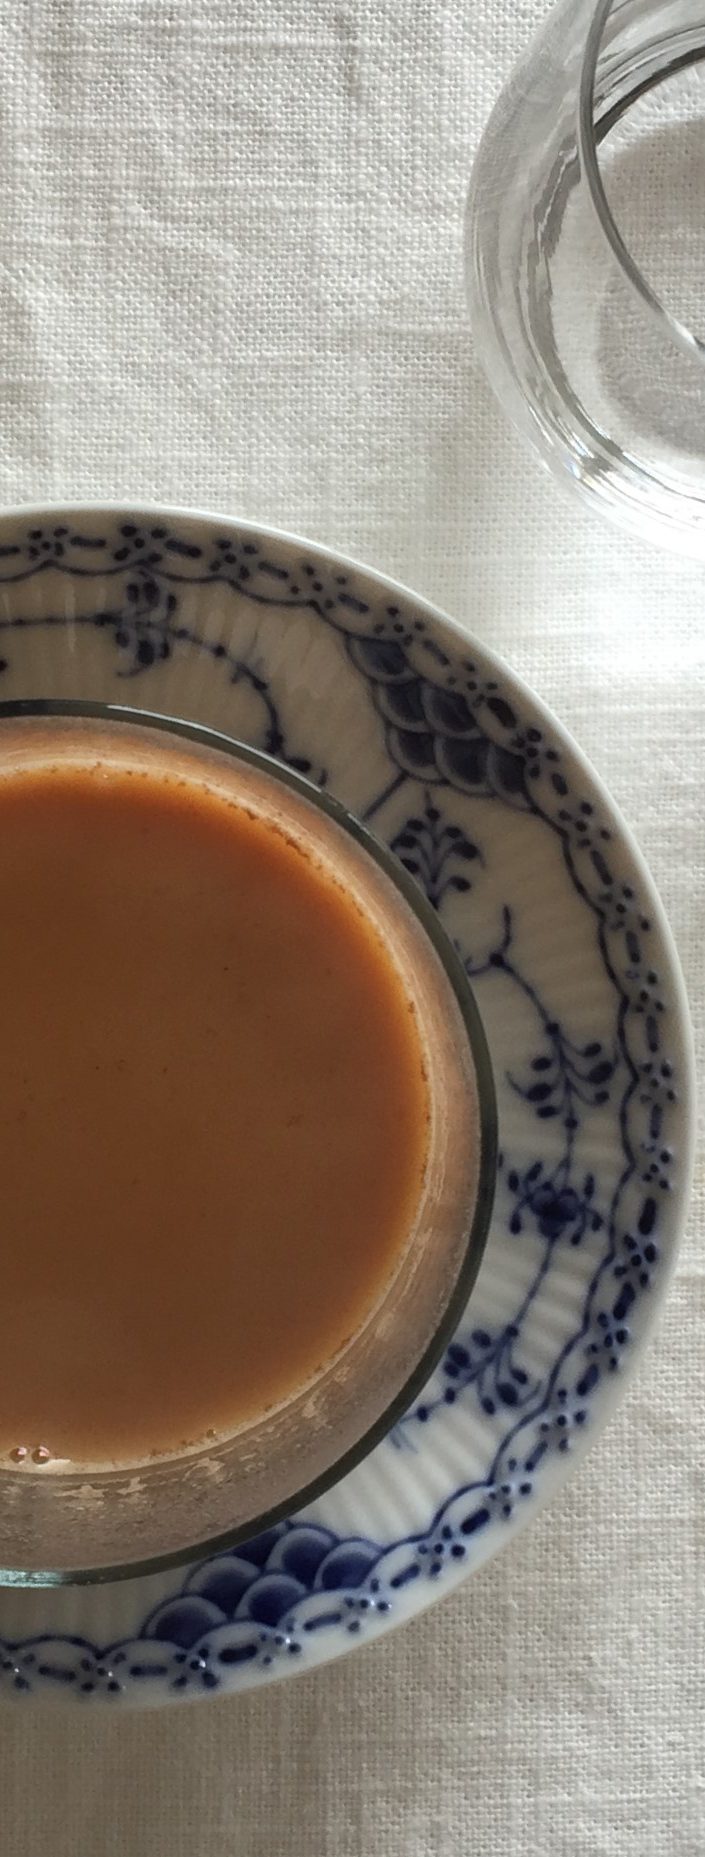 アールグレイ紅茶で淹れる 香港式コーヒーミルクティーの作り方 デカフェバージョン みんな愛しい馬の骨